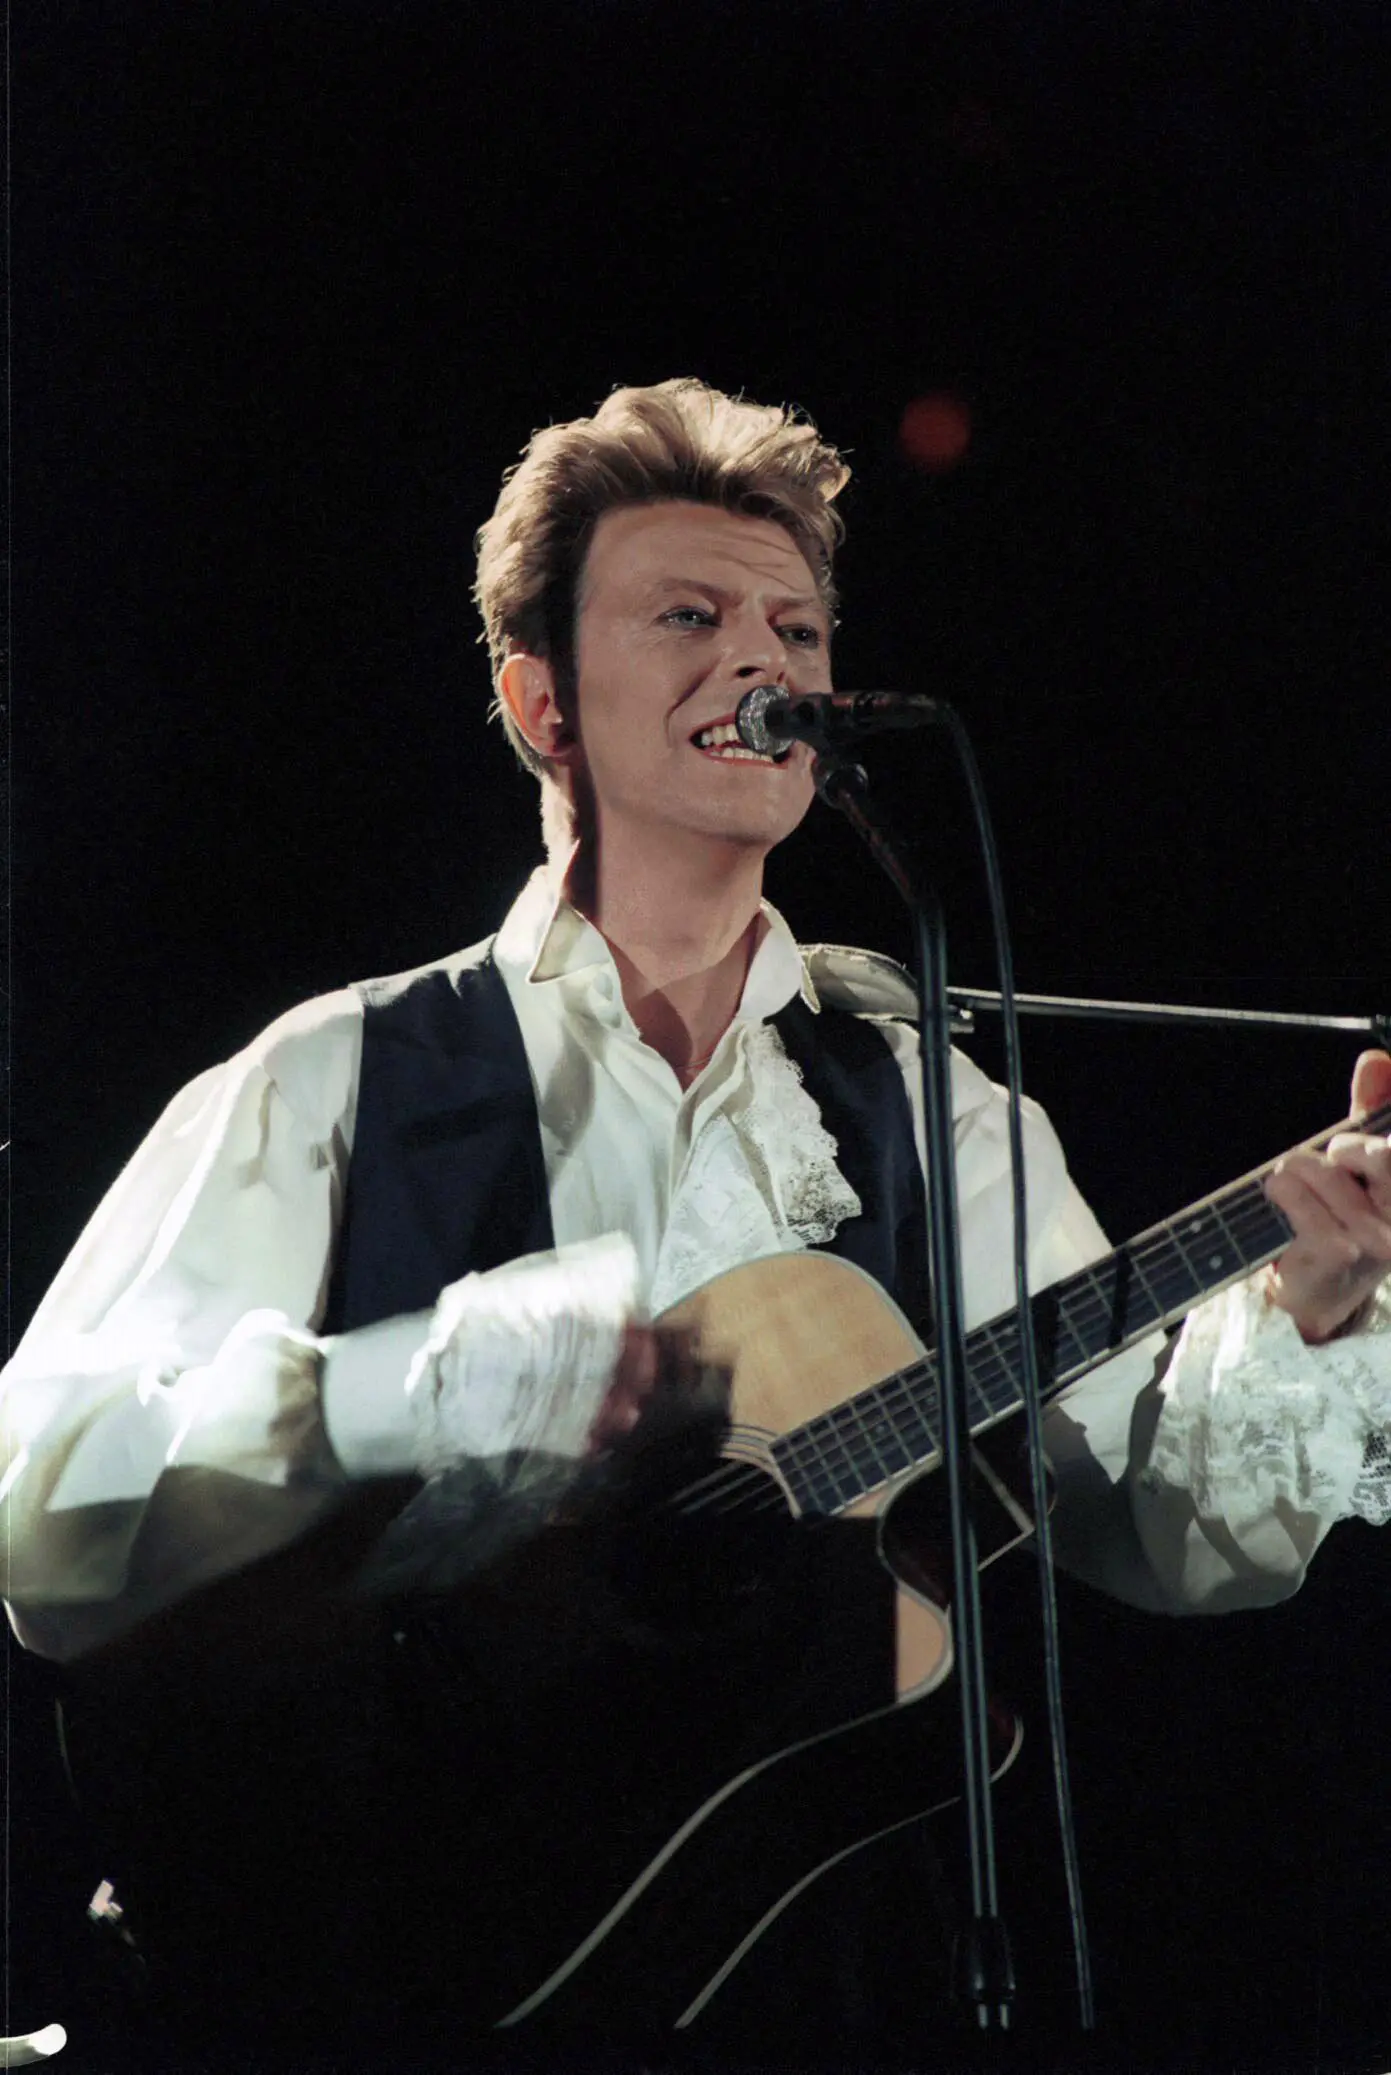 David Bowie. Meninggal pada 10 Januari 2016 di usia 69 tahun. Musisi legendaris ini tutup usia karena menderita kanker hati yang telah dideritanya selama 18 bulan. (Bintang/EPA)